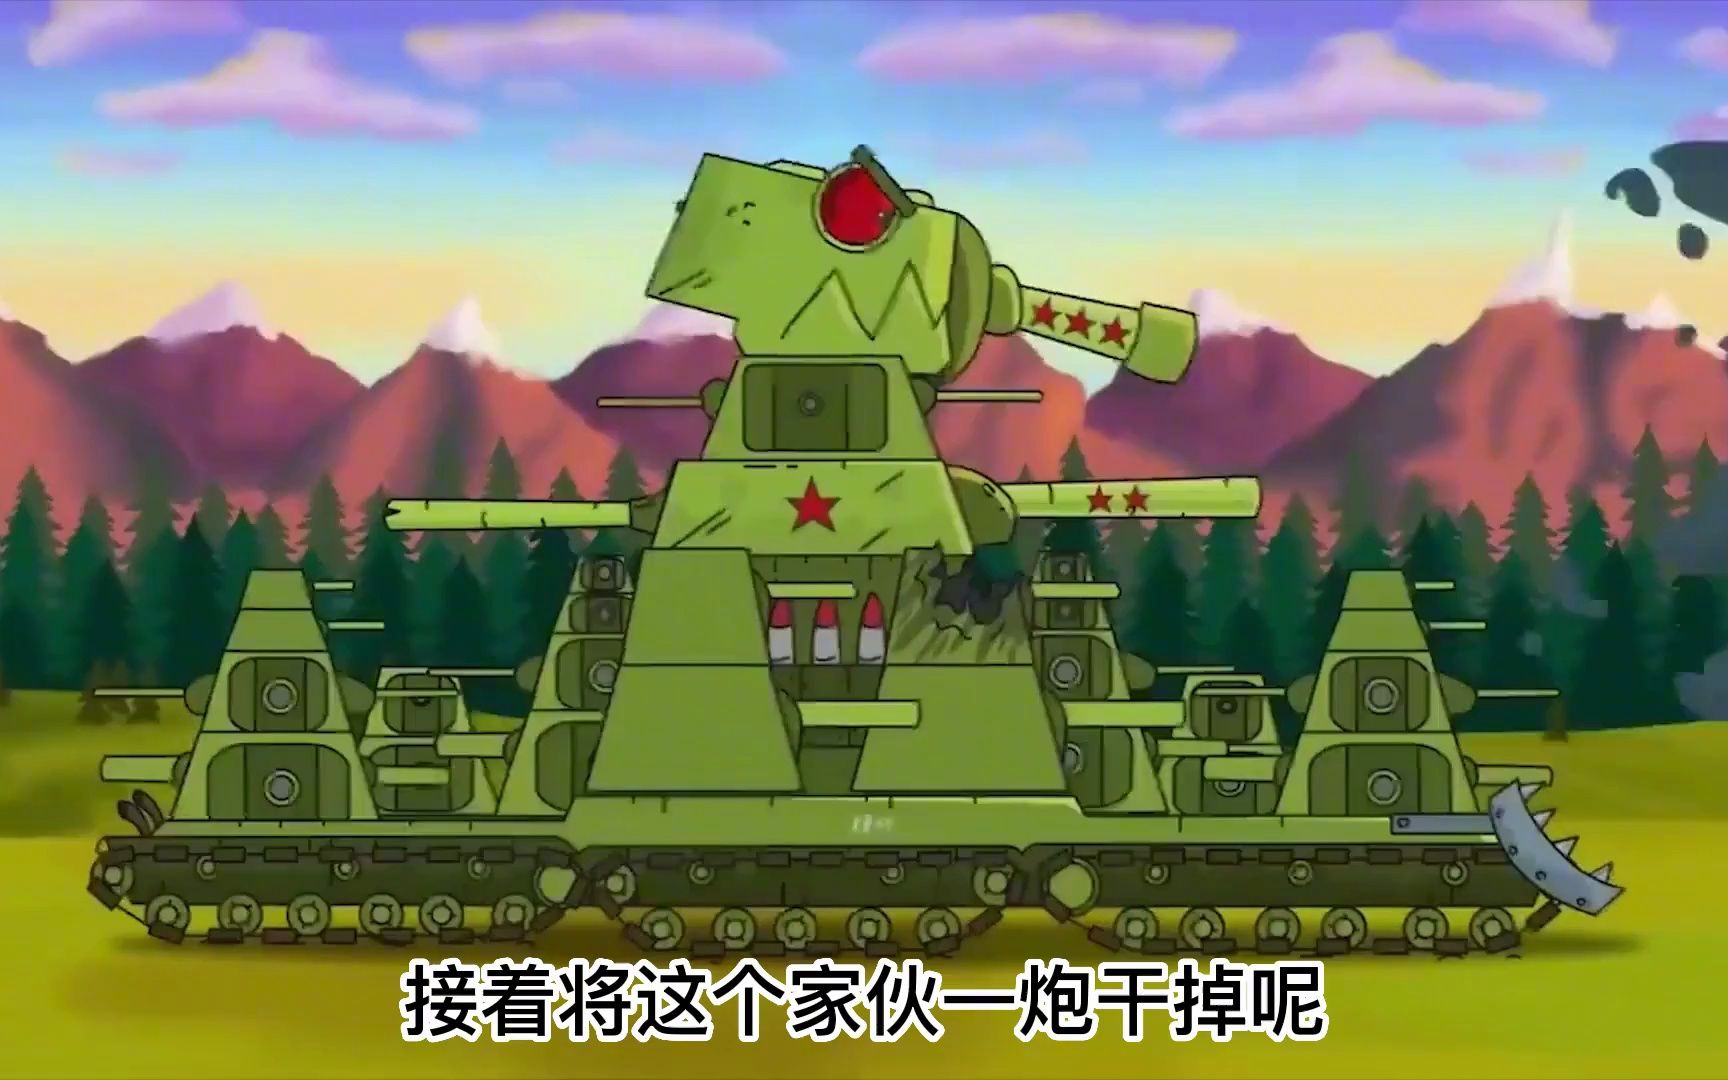 坦克世界动画:坦克挑战赛kv44强势登场